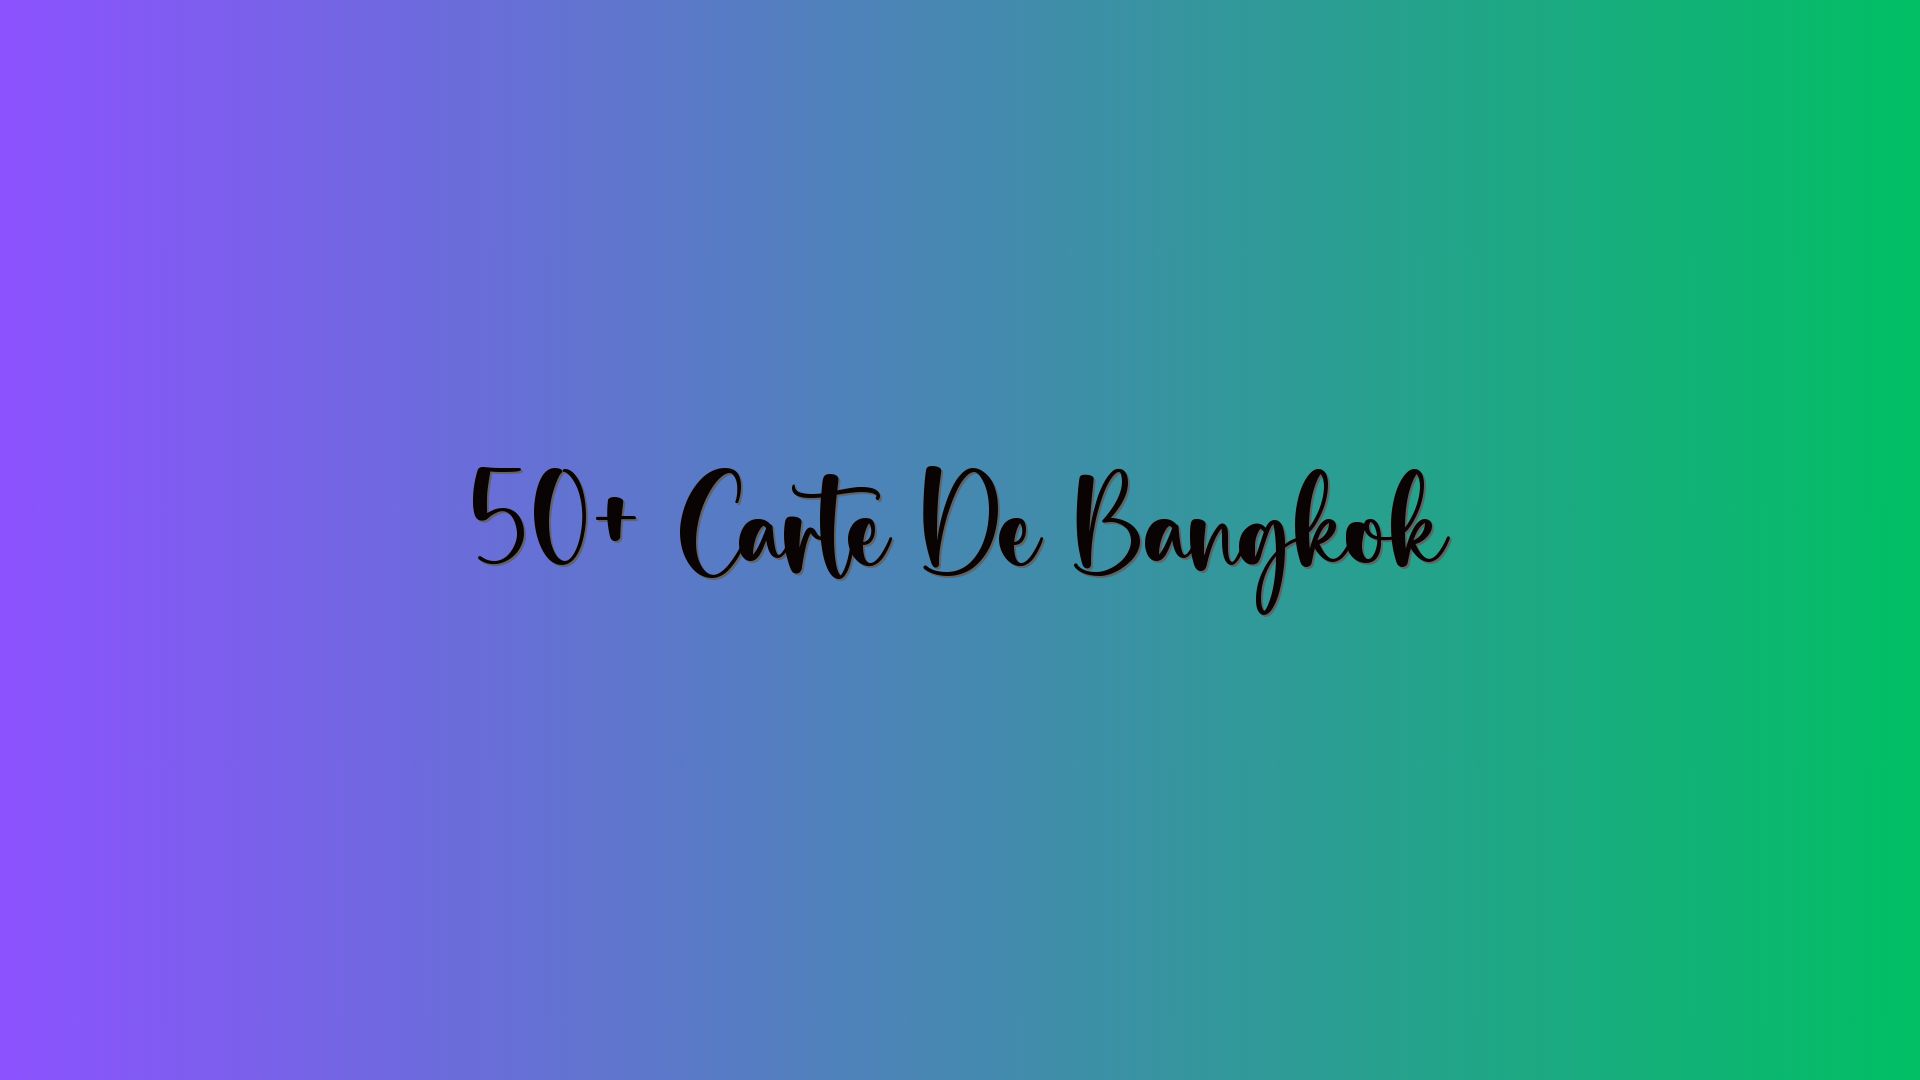 50+ Carte De Bangkok